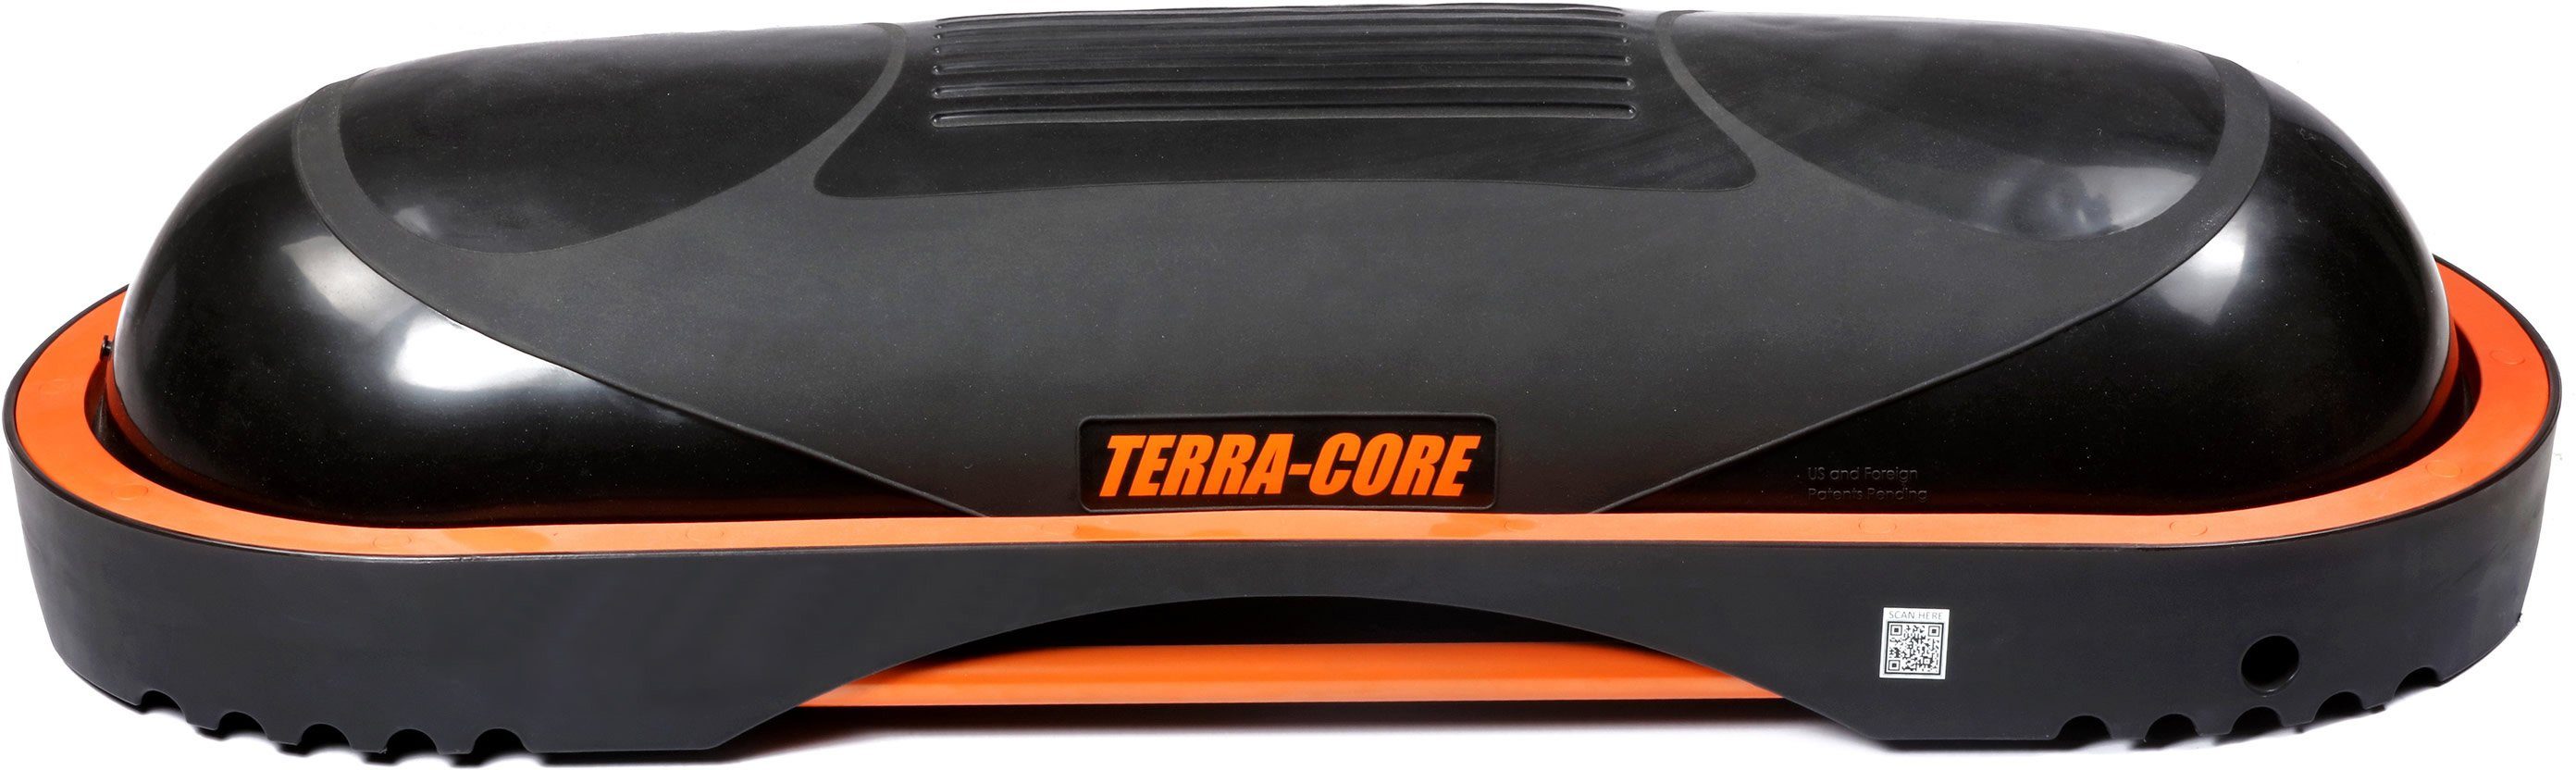 Universelle Board Terra Bench, Balance Workout und Balancetrainer Stepp Core, Core Terra